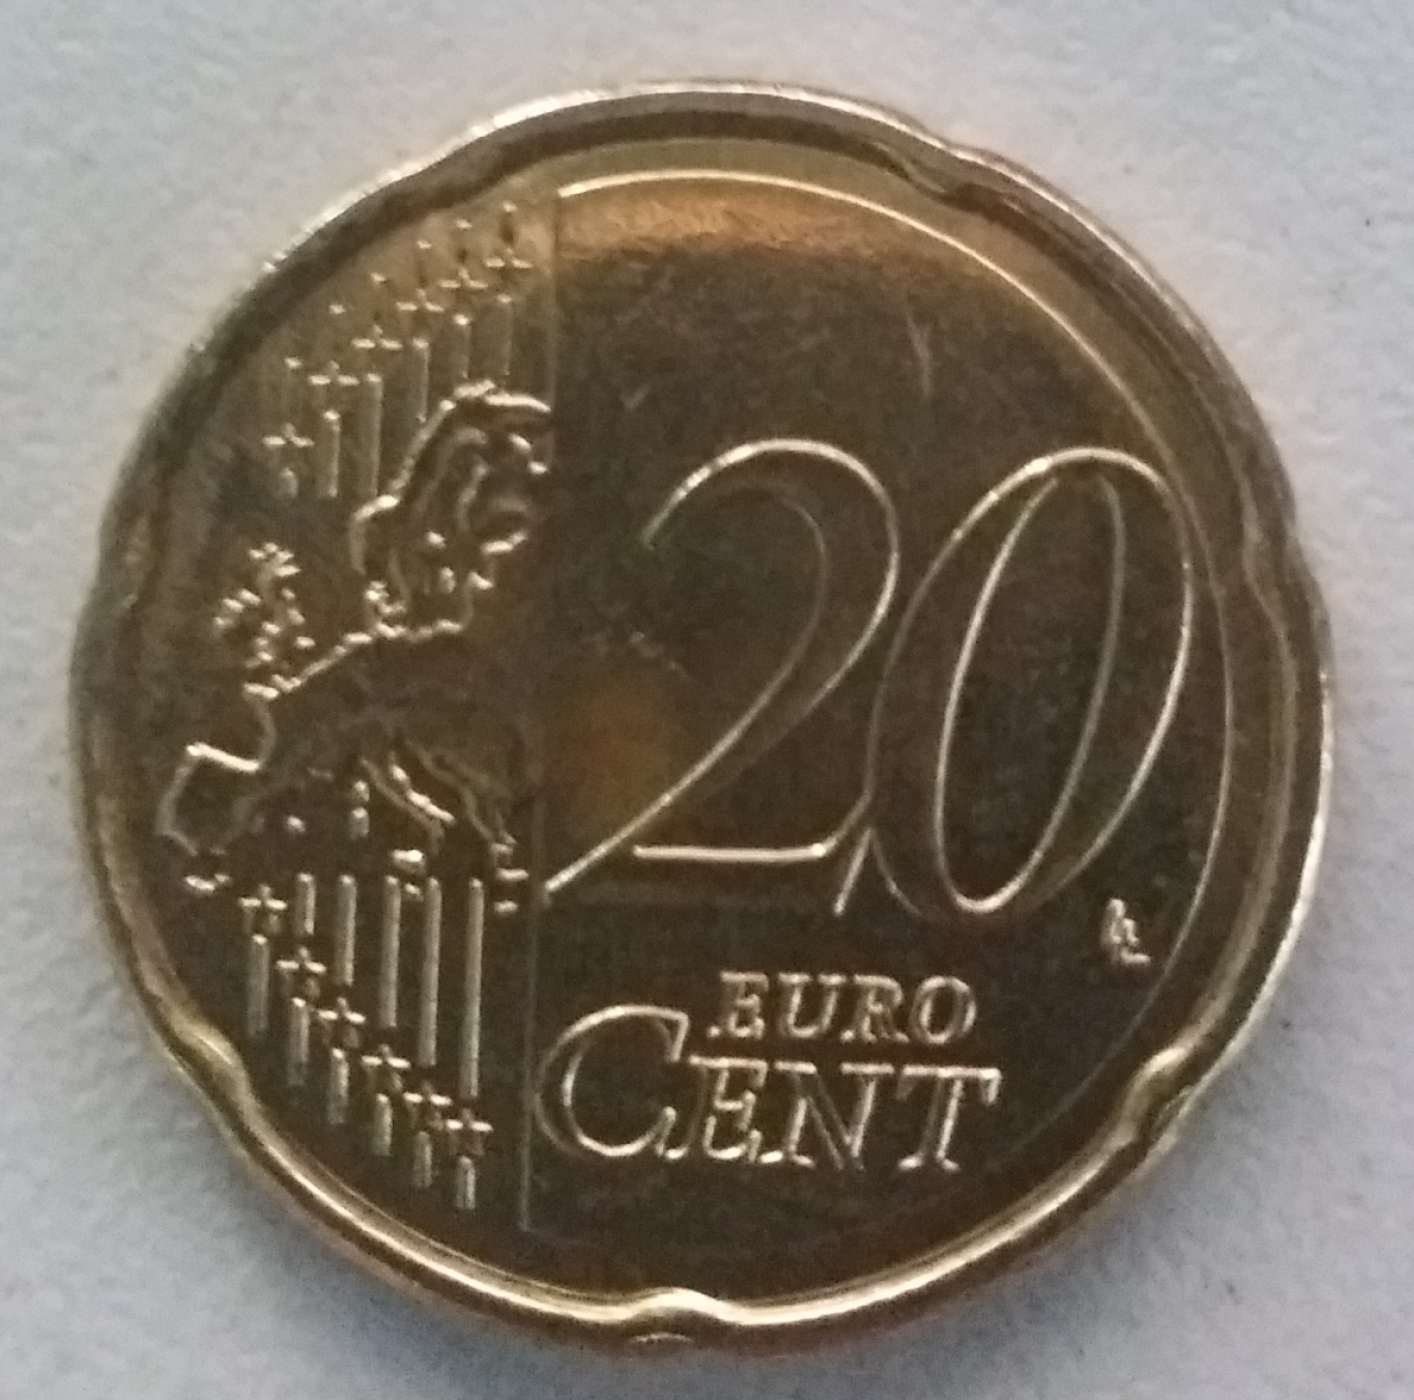 euro 20 cent coin